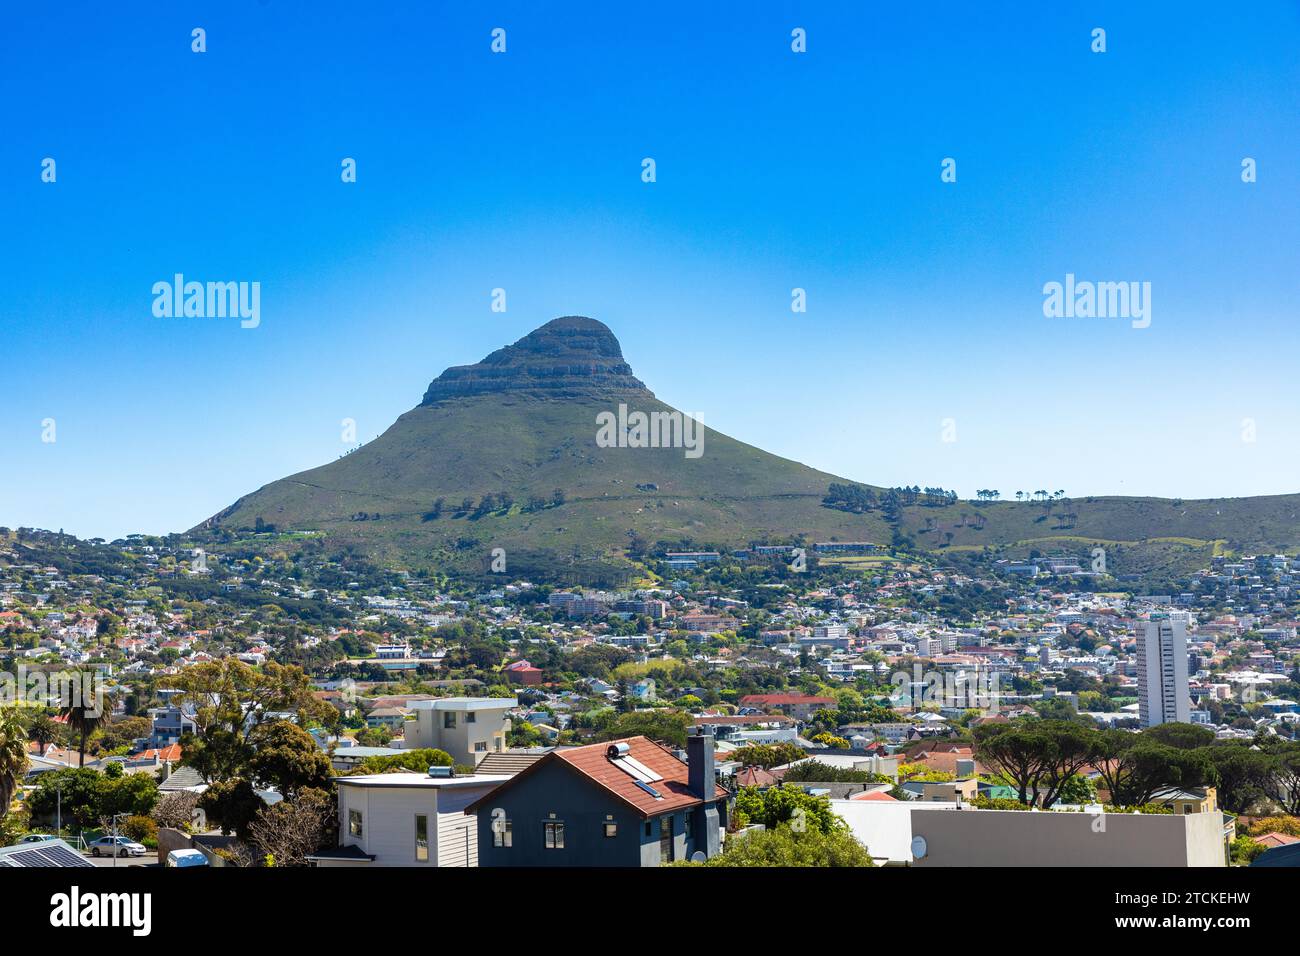 Une vue vers l'ouest de Lion's Head au Cap, en Afrique du Sud, l'un des monuments les plus reconnaissables du pays Banque D'Images